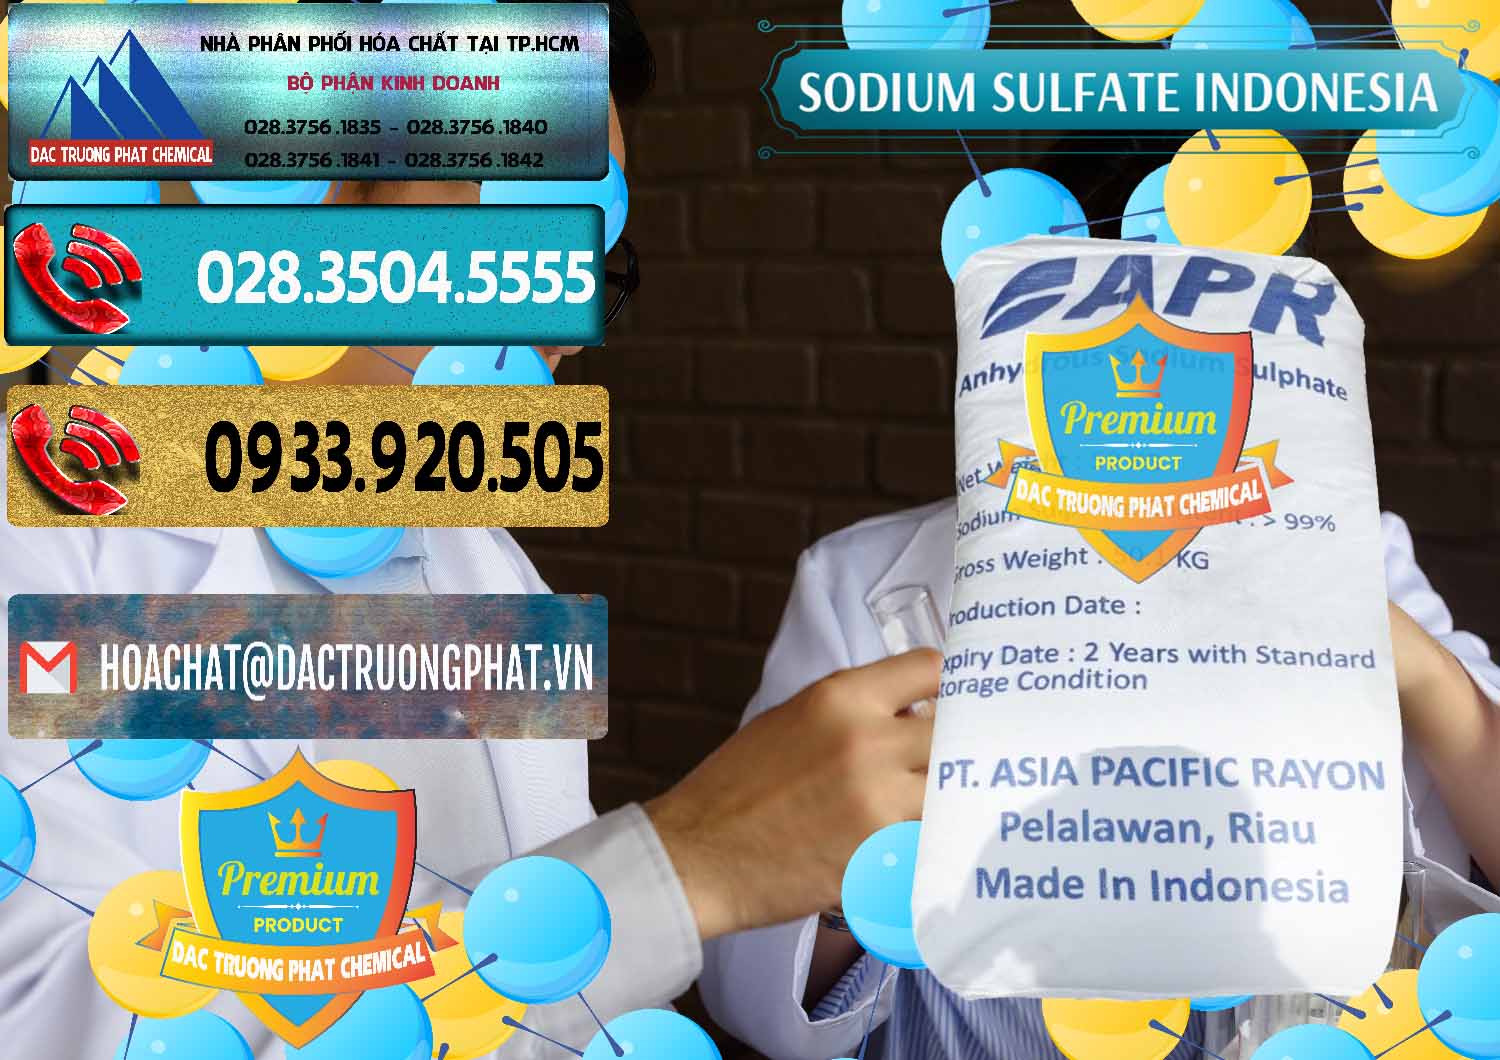 Nơi phân phối _ bán Sodium Sulphate - Muối Sunfat Na2SO4 APR Indonesia - 0460 - Cty nhập khẩu ( cung cấp ) hóa chất tại TP.HCM - hoachatdetnhuom.com